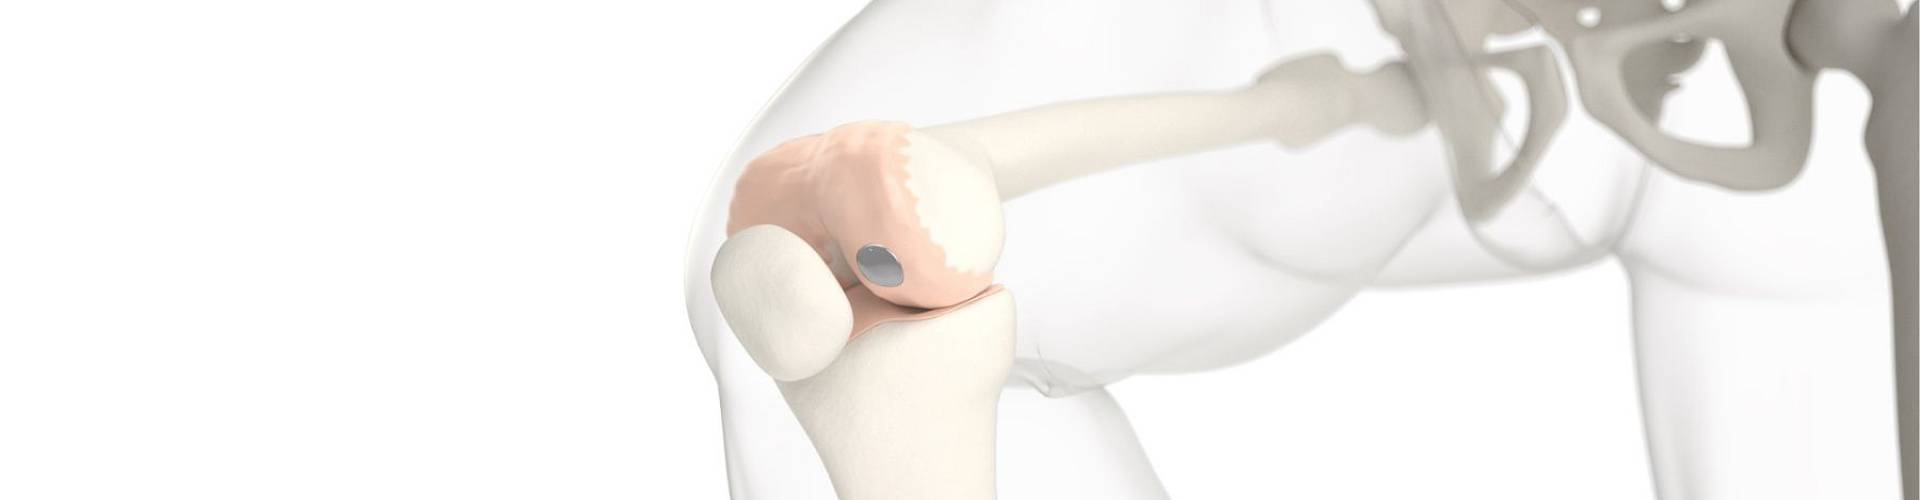 Mini-Implantat gegen Knorpelschaden im Knie